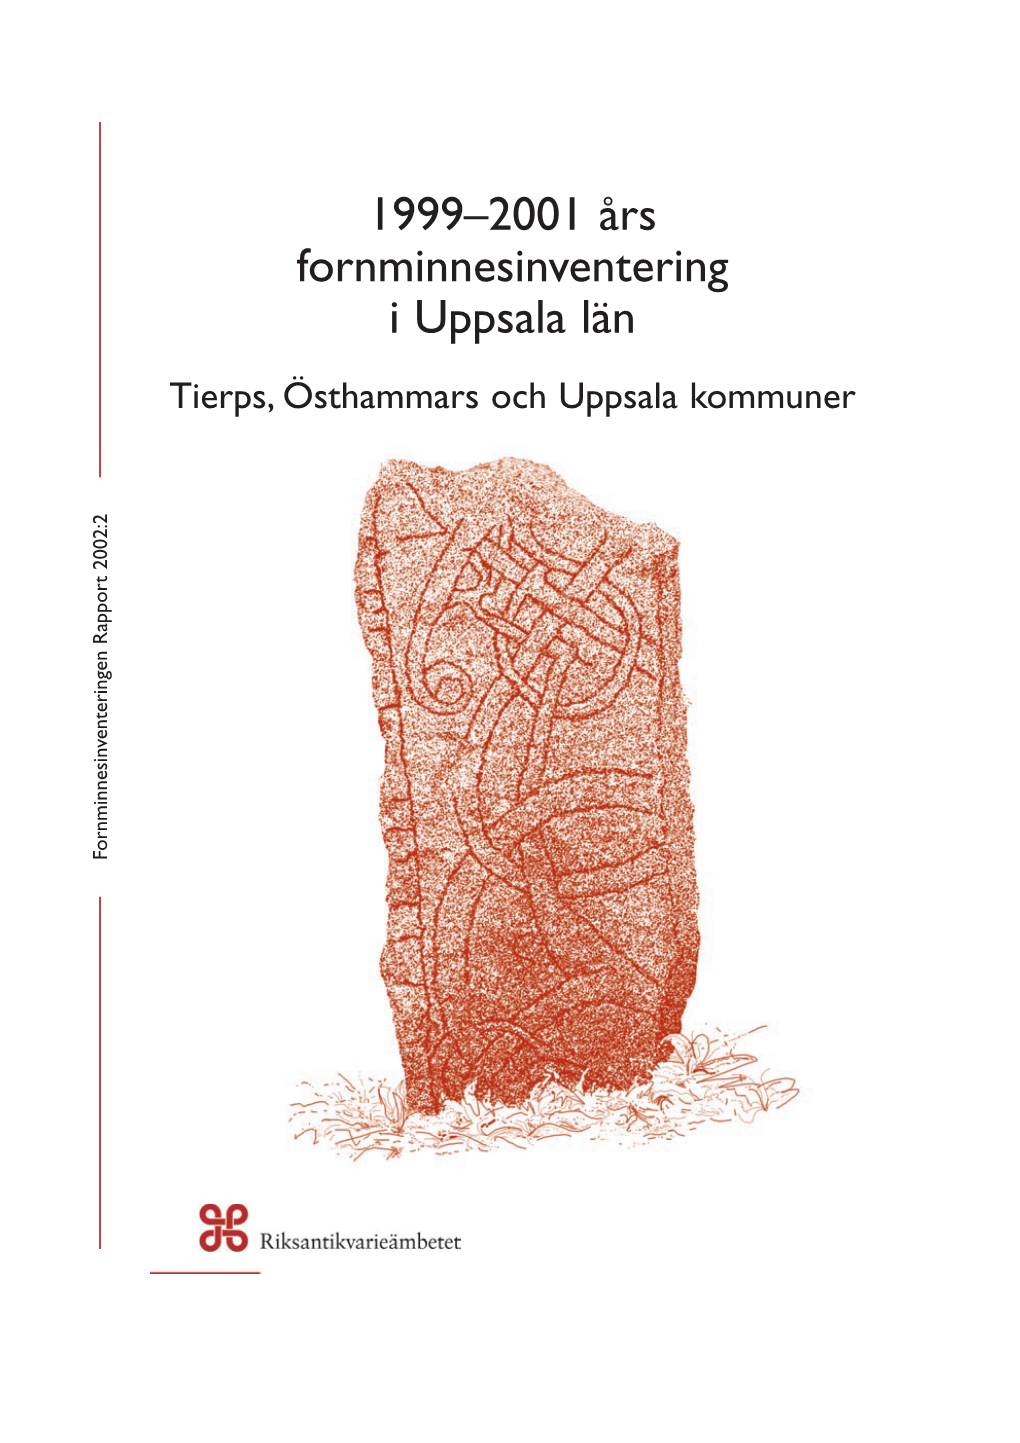 1999-2001 Års Fornminnesinventering Tierp, Östhammar, Uppsala